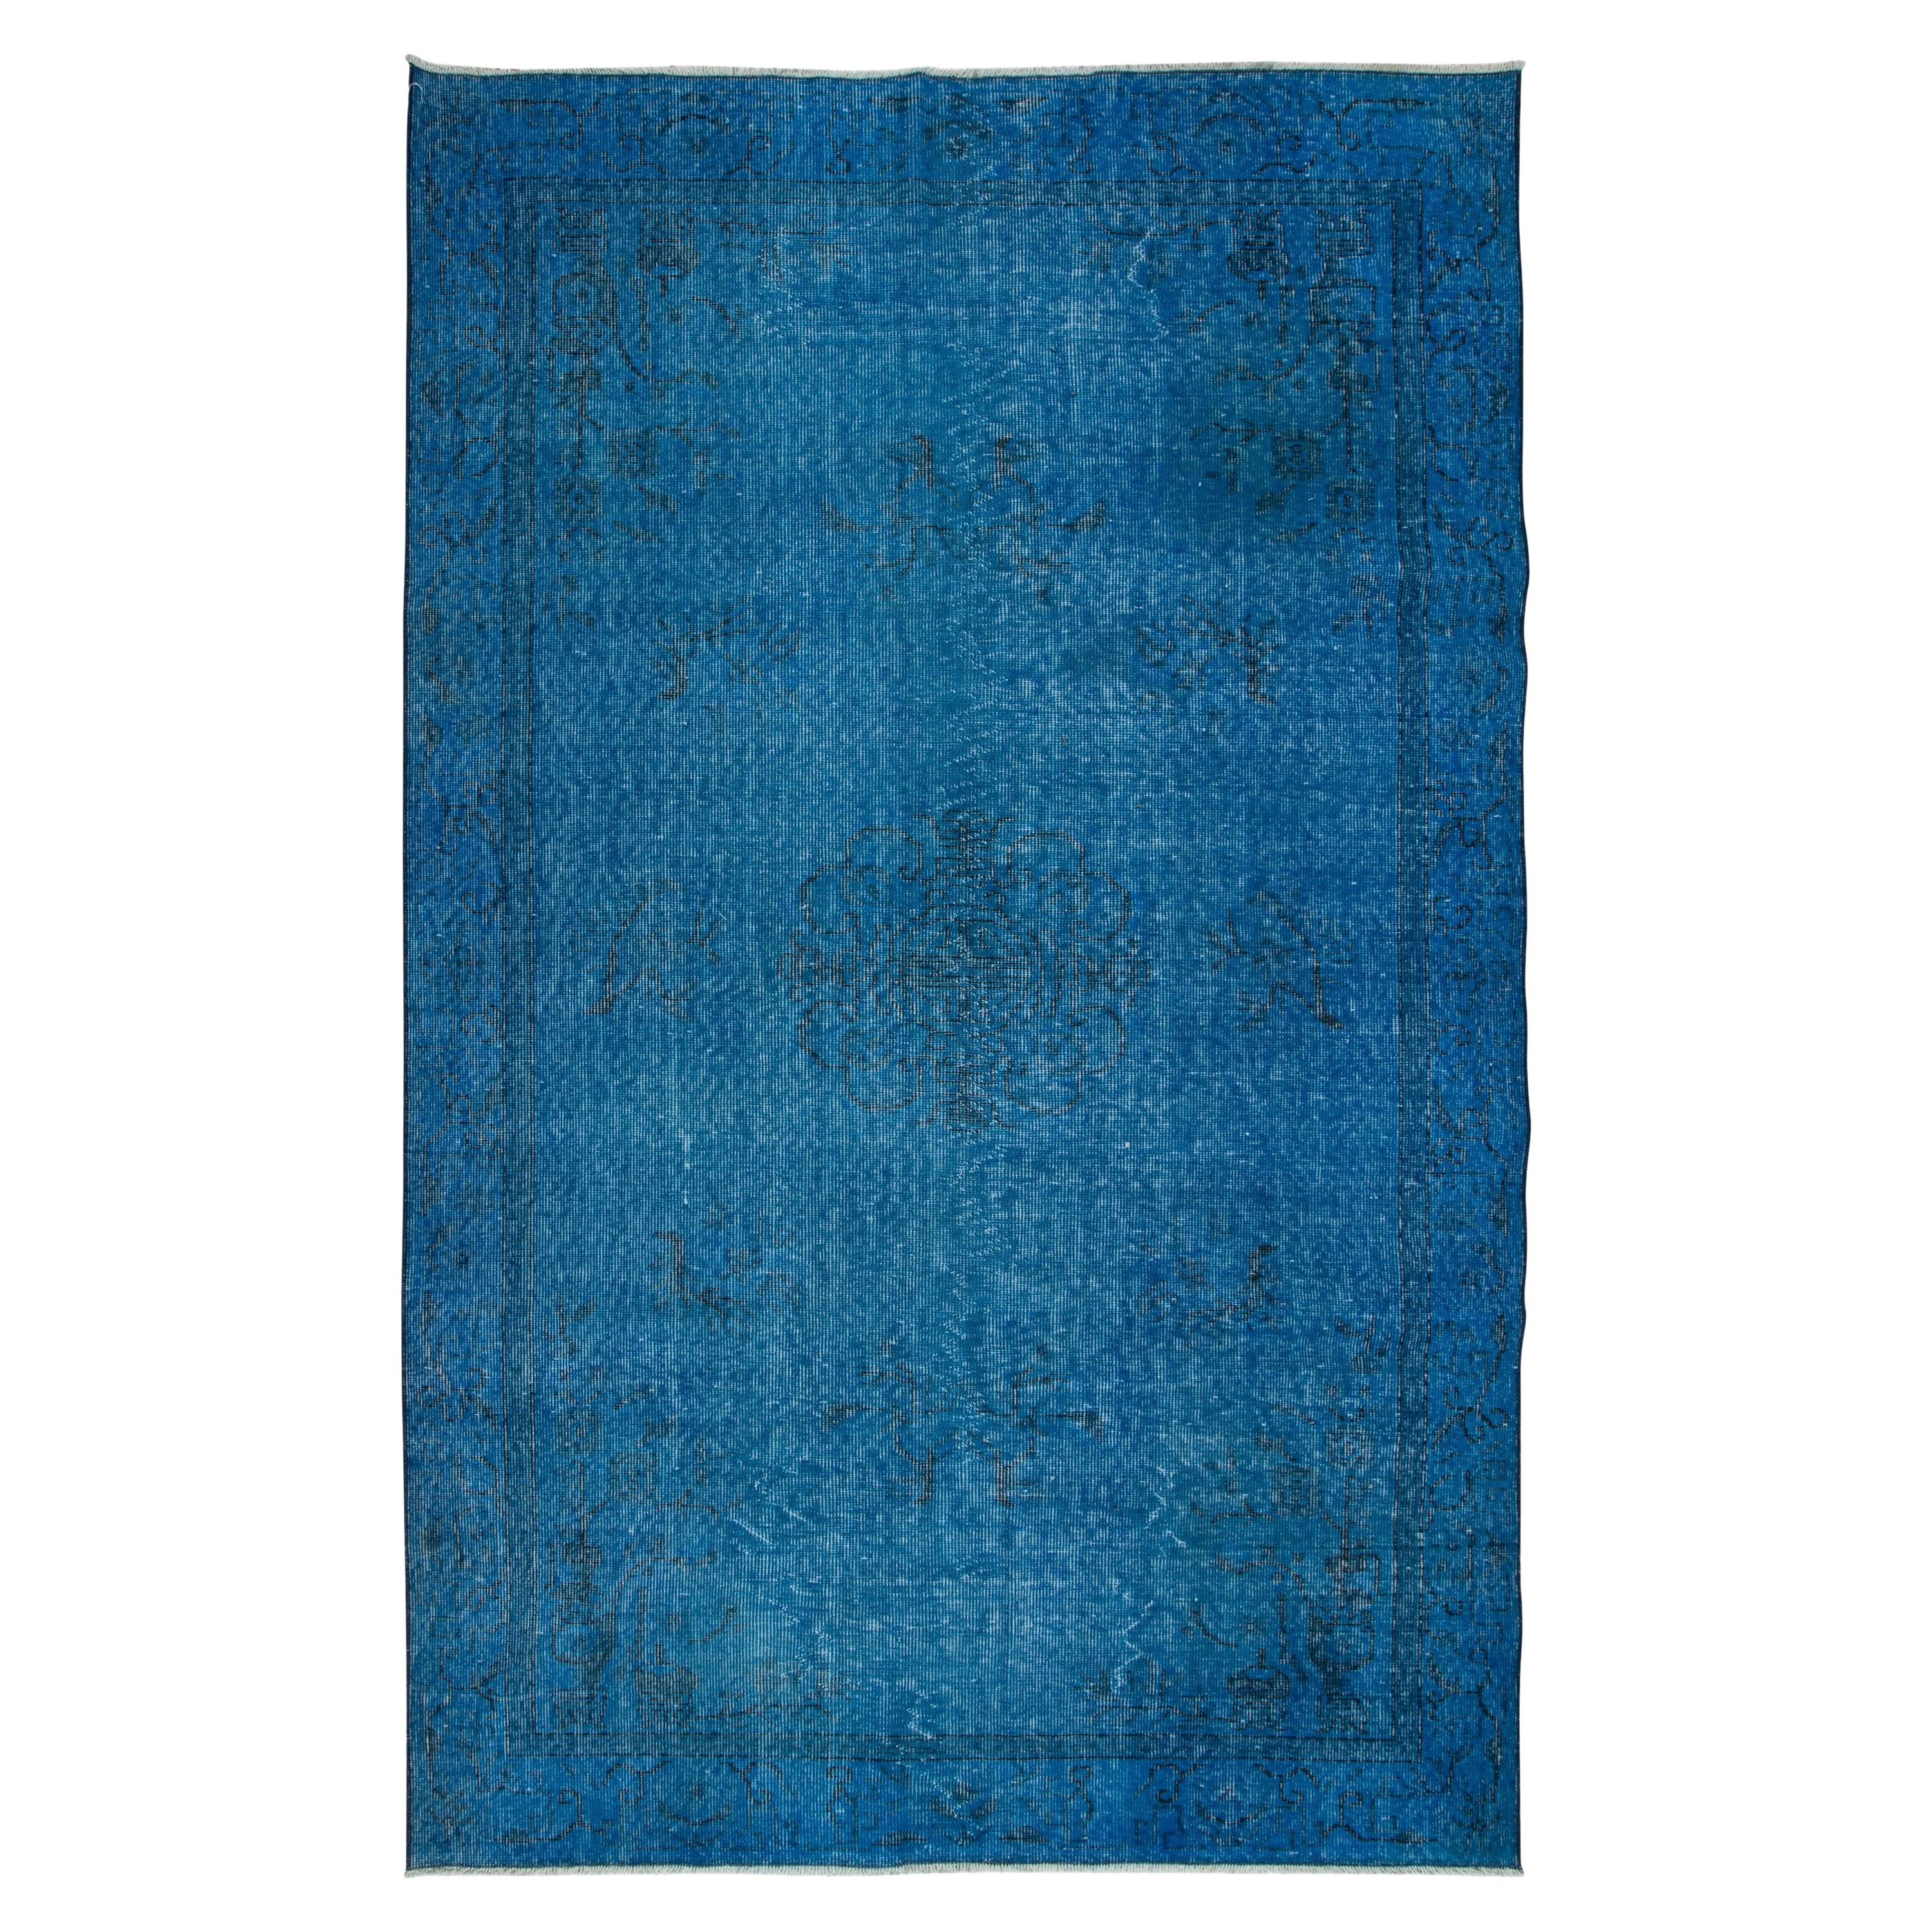 5.5x8.8 Ft Chinesisch Art Deco inspiriert handgefertigten blauen Teppich für moderne Interieurs